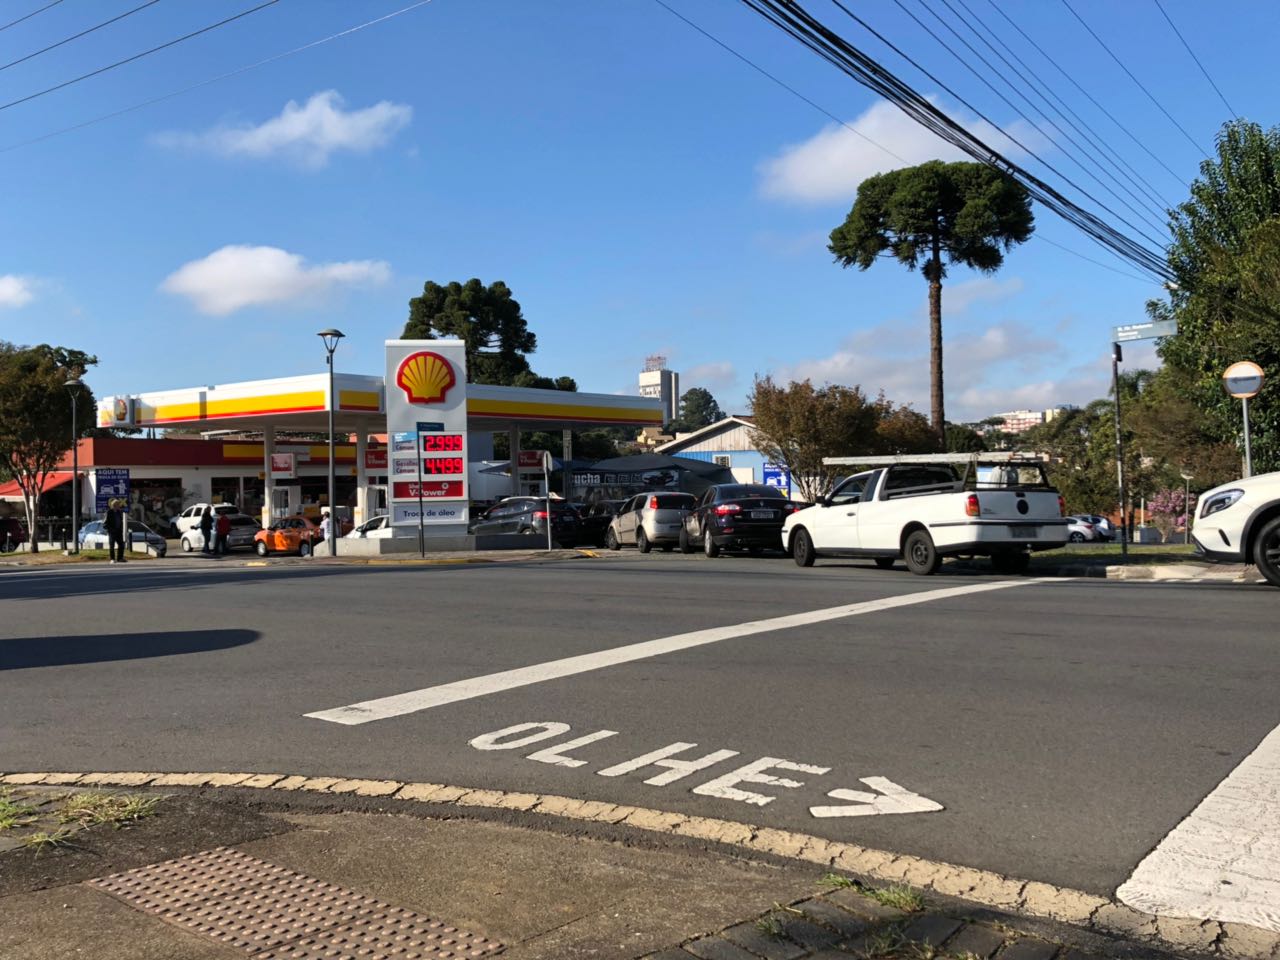  Aumento nos preços de combustíveis em Curitiba é apurado em inquérito